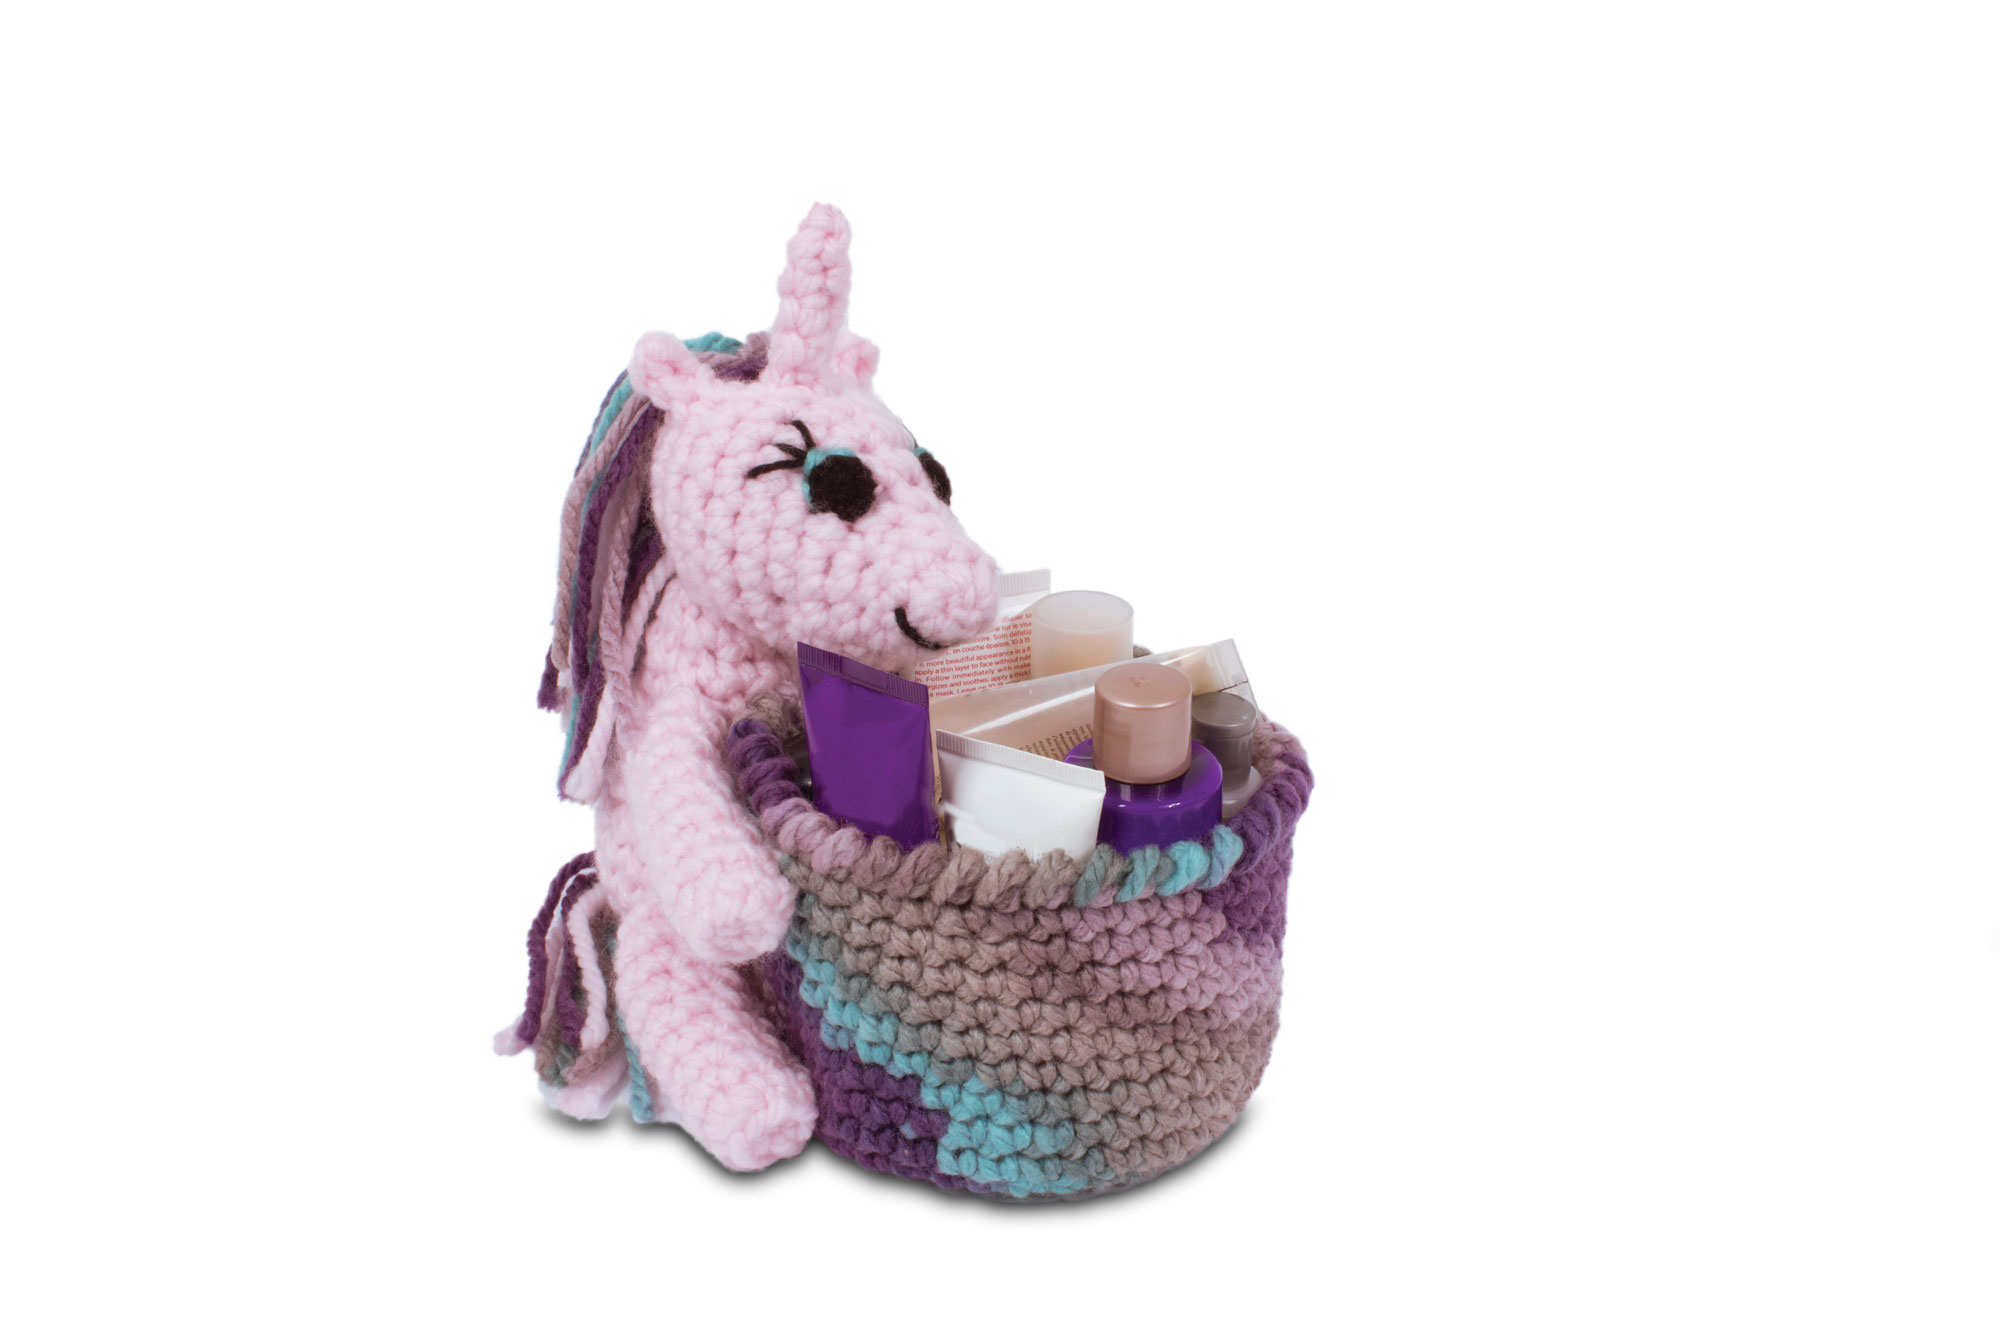 Knitty Critters - Basket Buddies - Yasmine Unicorn